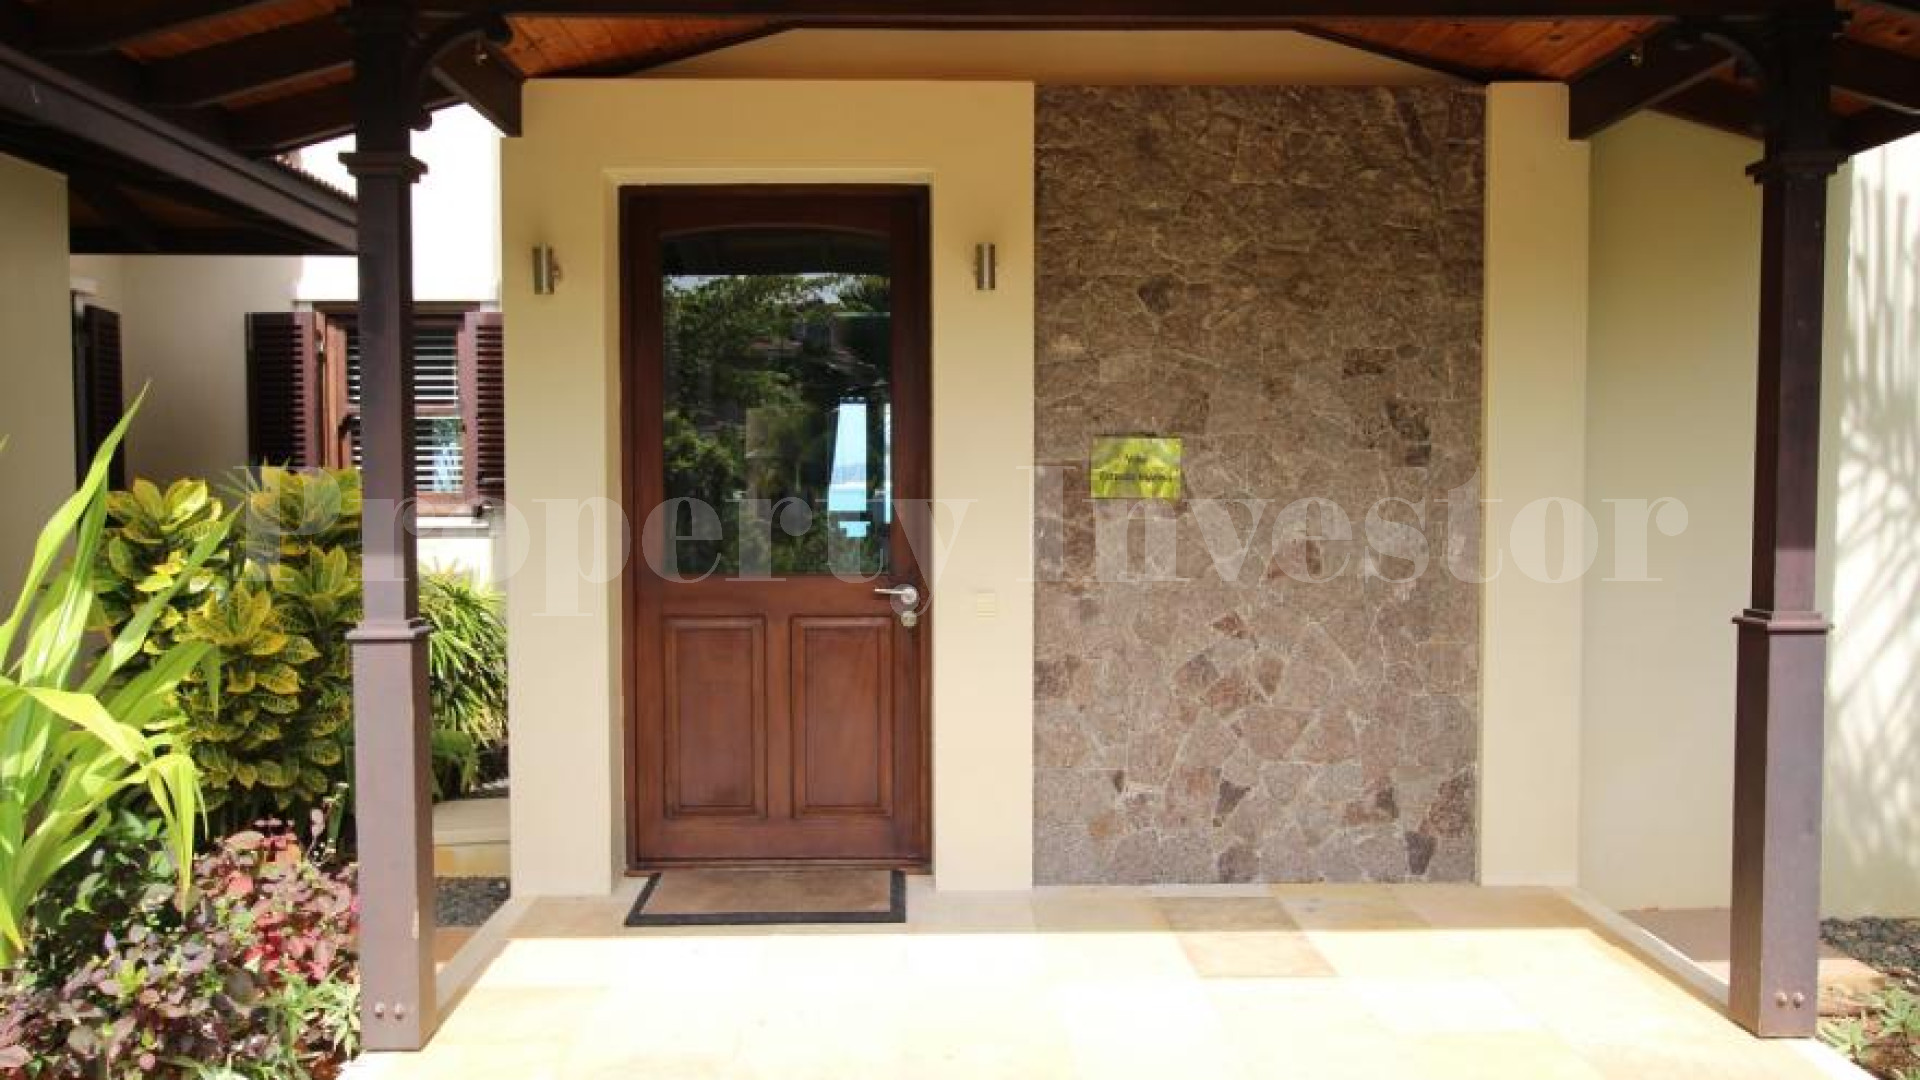 Exclusive 4 Bedroom Luxury Oceanfront Villa for Sale on Eden Island, Seychelles